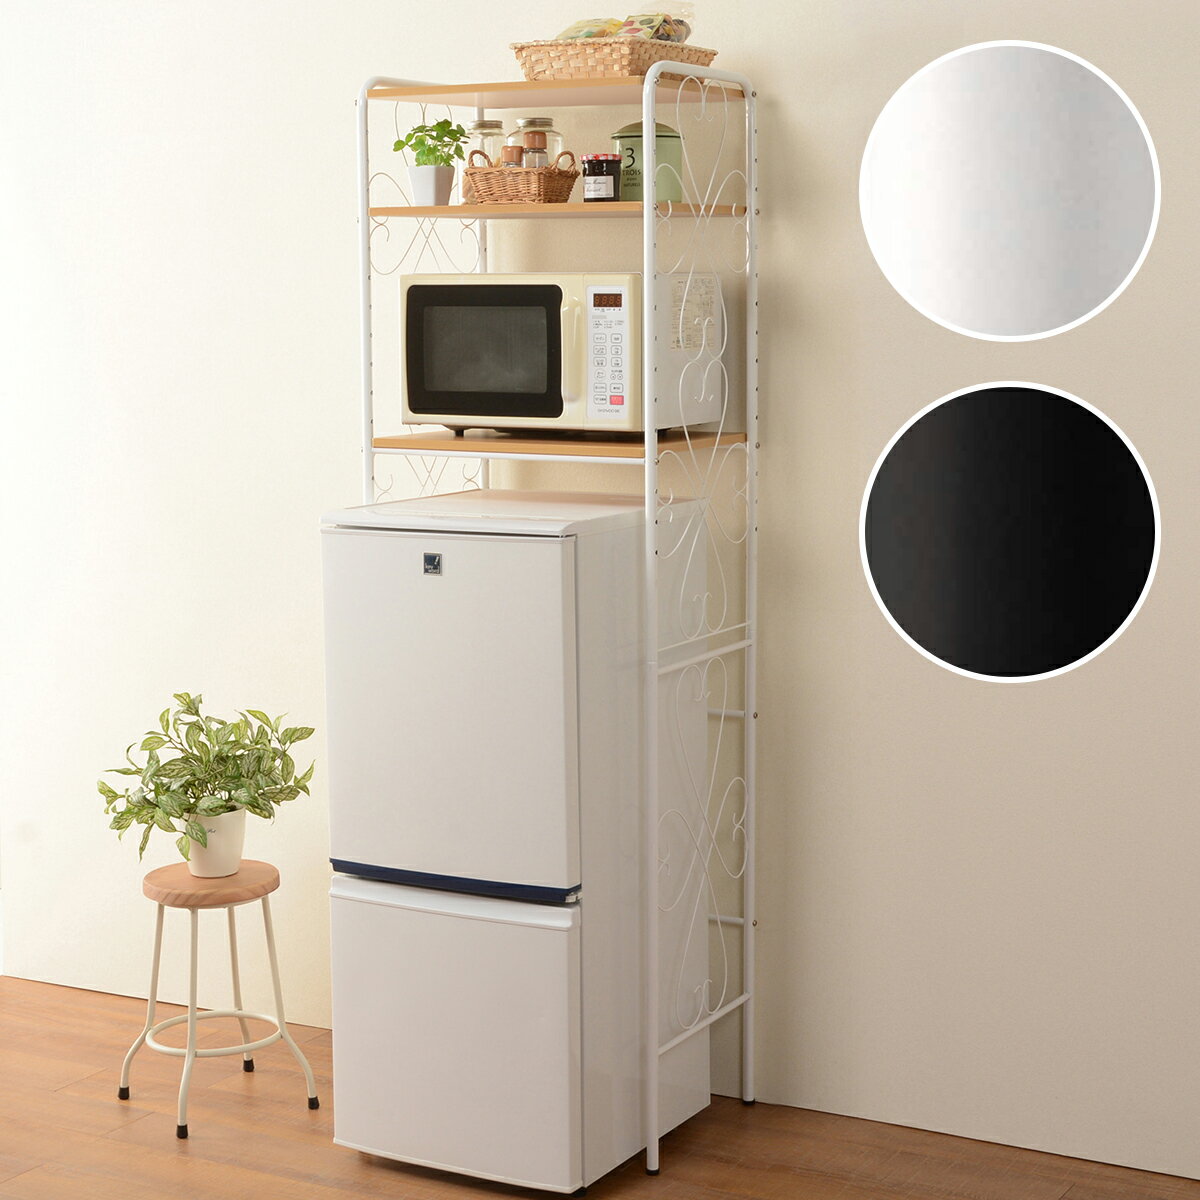 アンティークな雰囲気のおしゃれな冷蔵庫ラック 小型冷蔵庫上のデッドスペースを有効活用 ニトリ　メーカー直送・送料無料